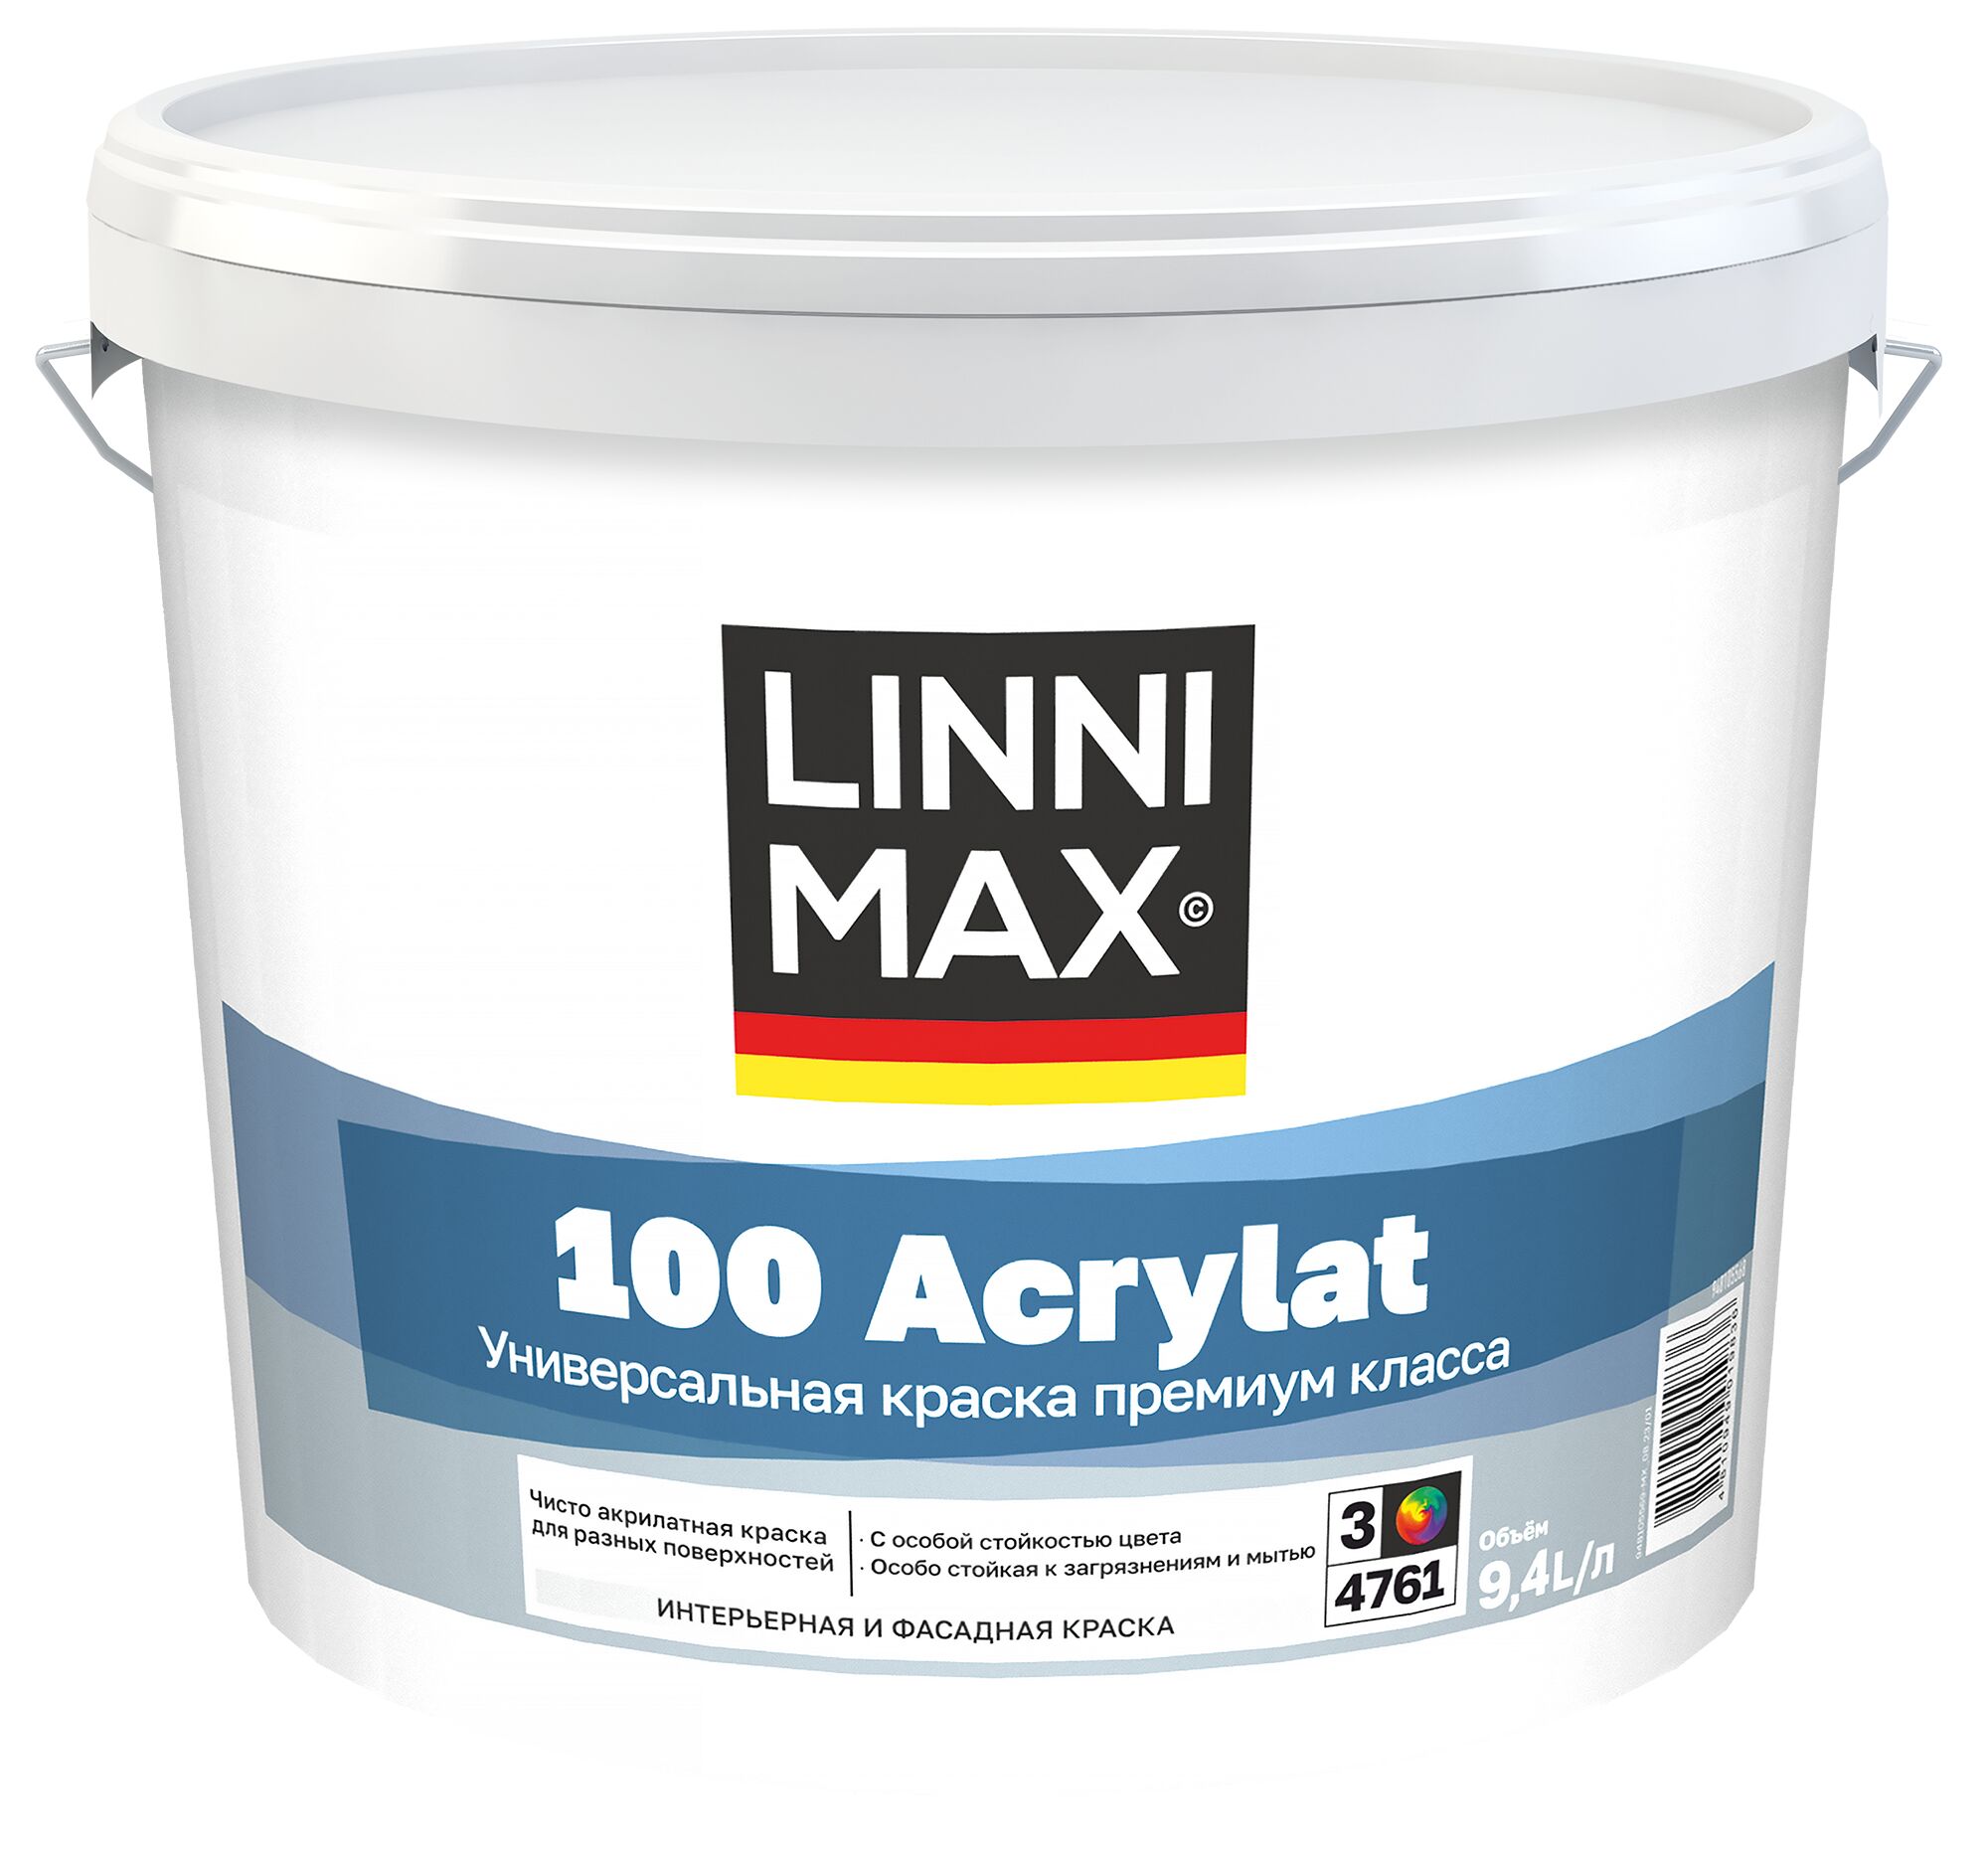 100 Acrylat 9,4л Краска водно-дисперсионная для наружных и внутренних работ База3 LINNIMAX, 100 Acrylat 9,4л Краска водно-дисперсионная для наружных и внутренних работ База3 LINNIMAX